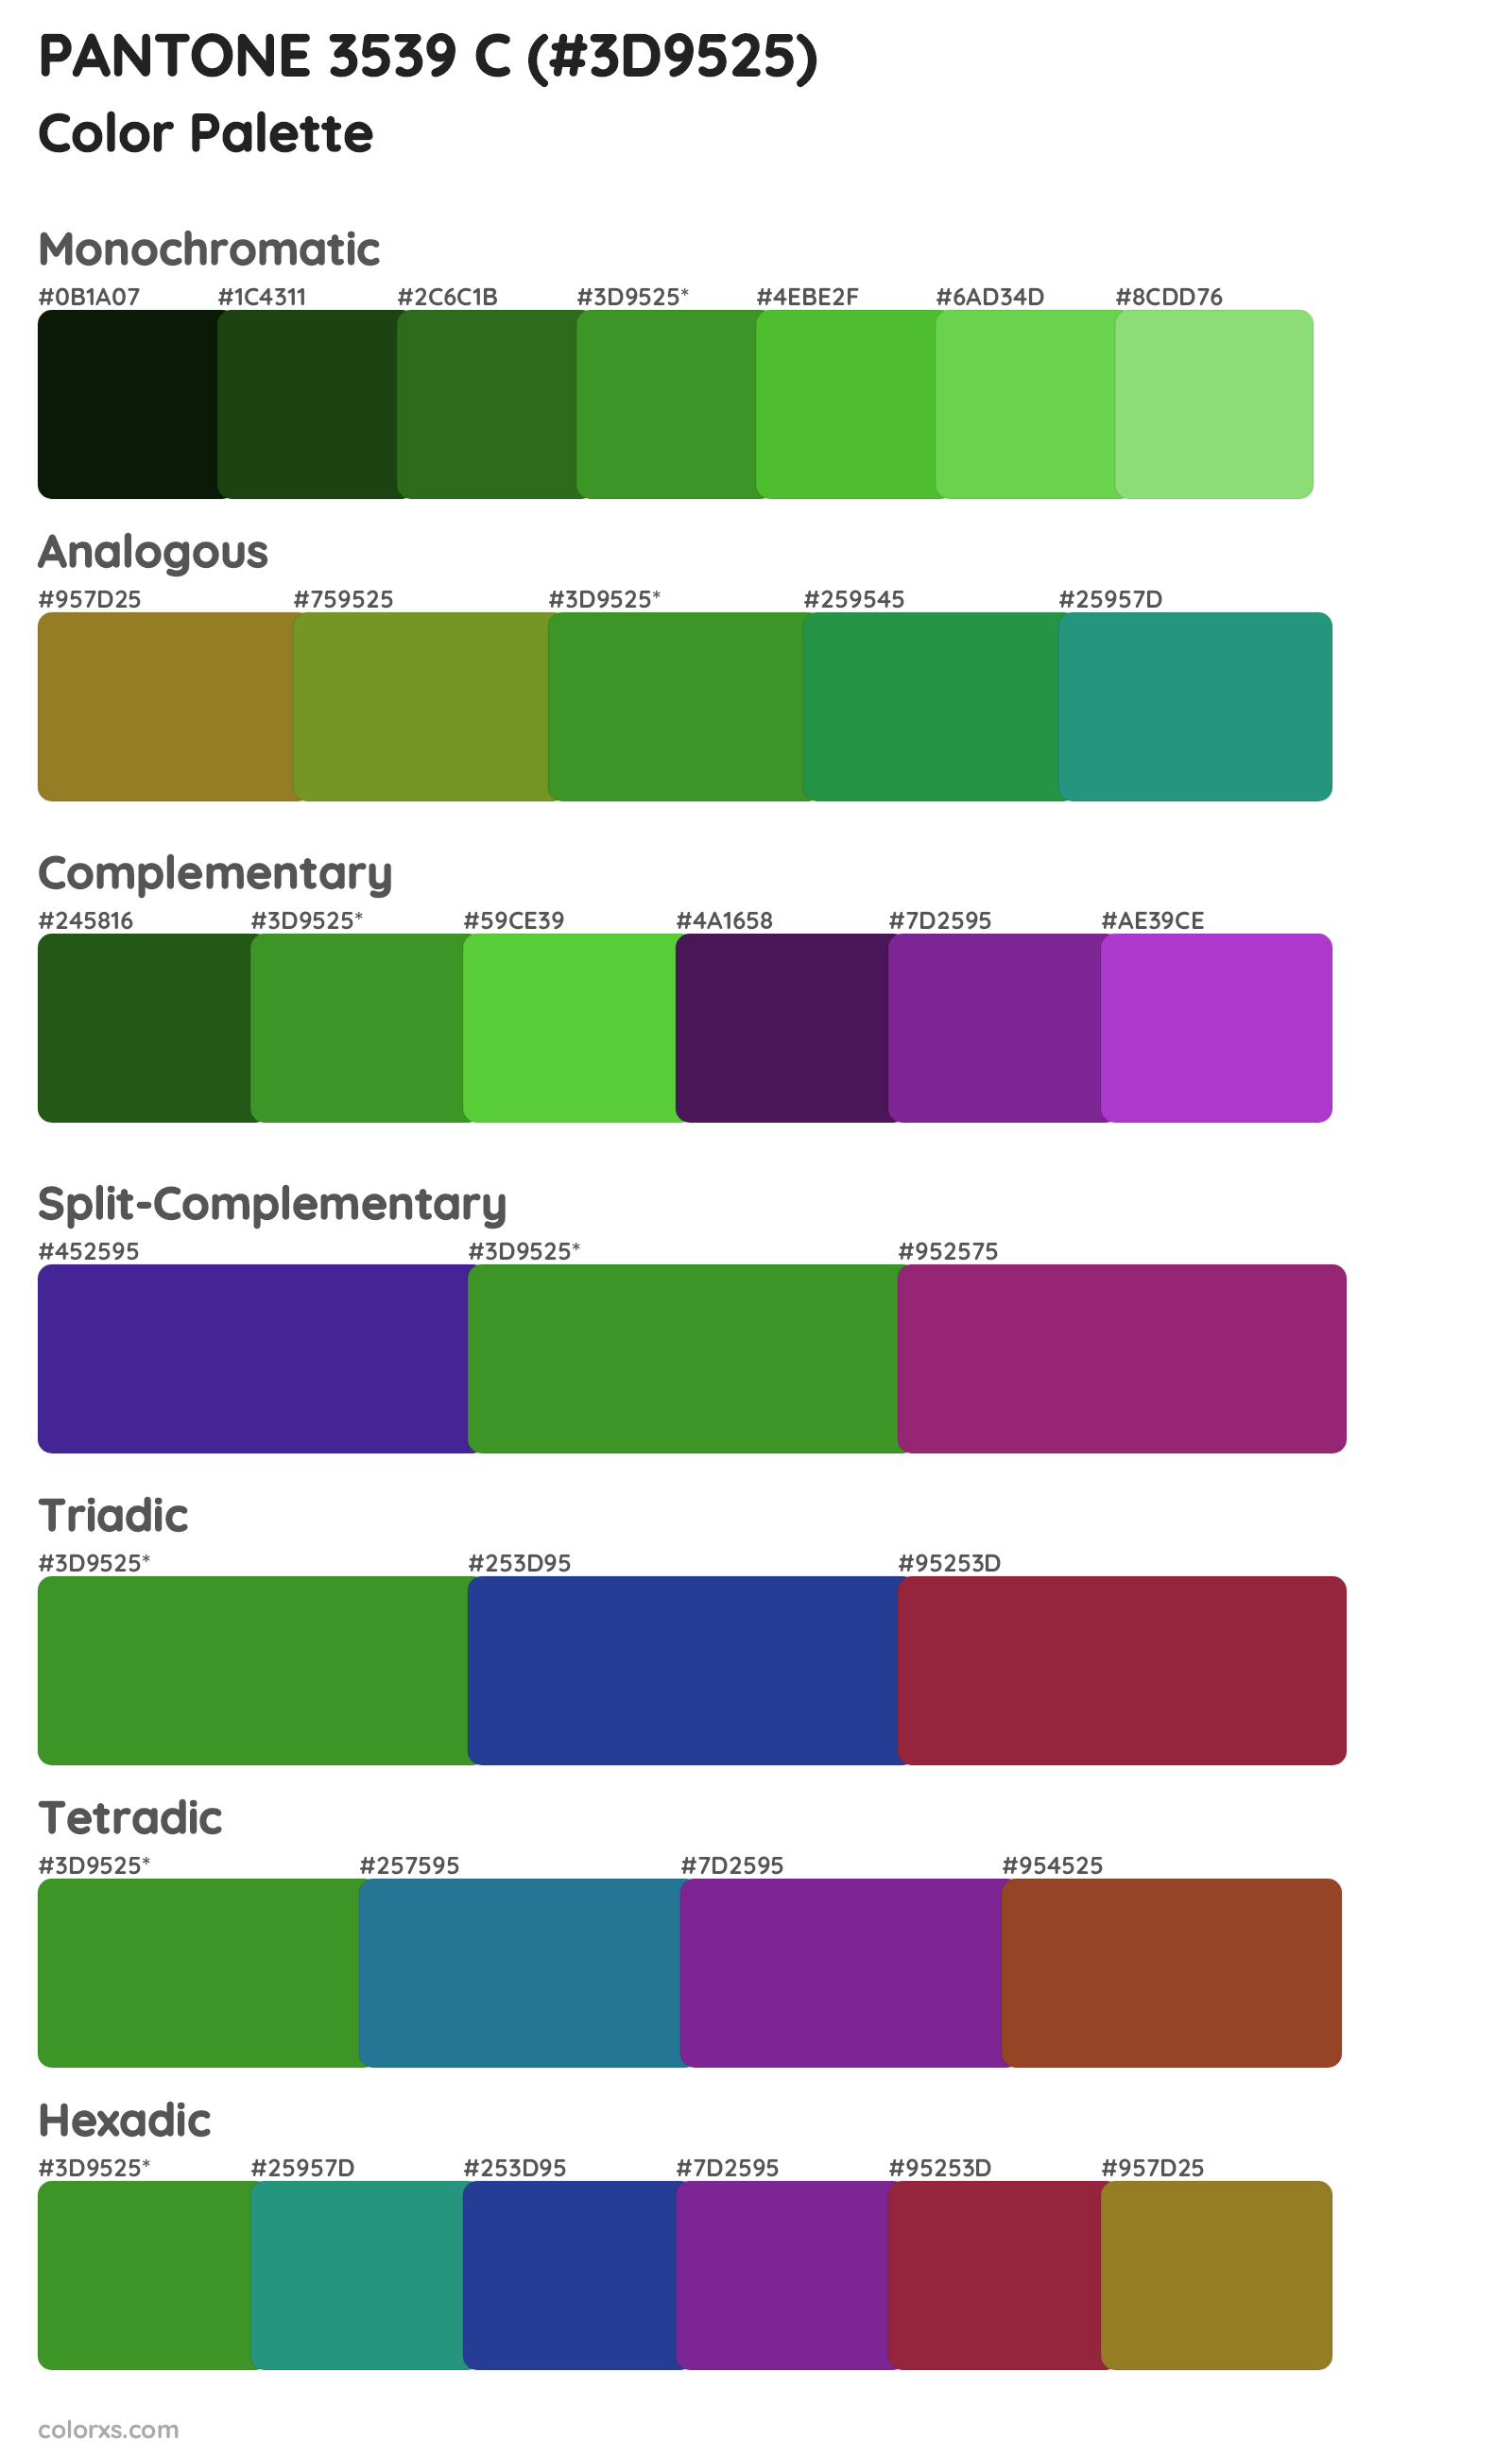 PANTONE 3539 C Color Scheme Palettes